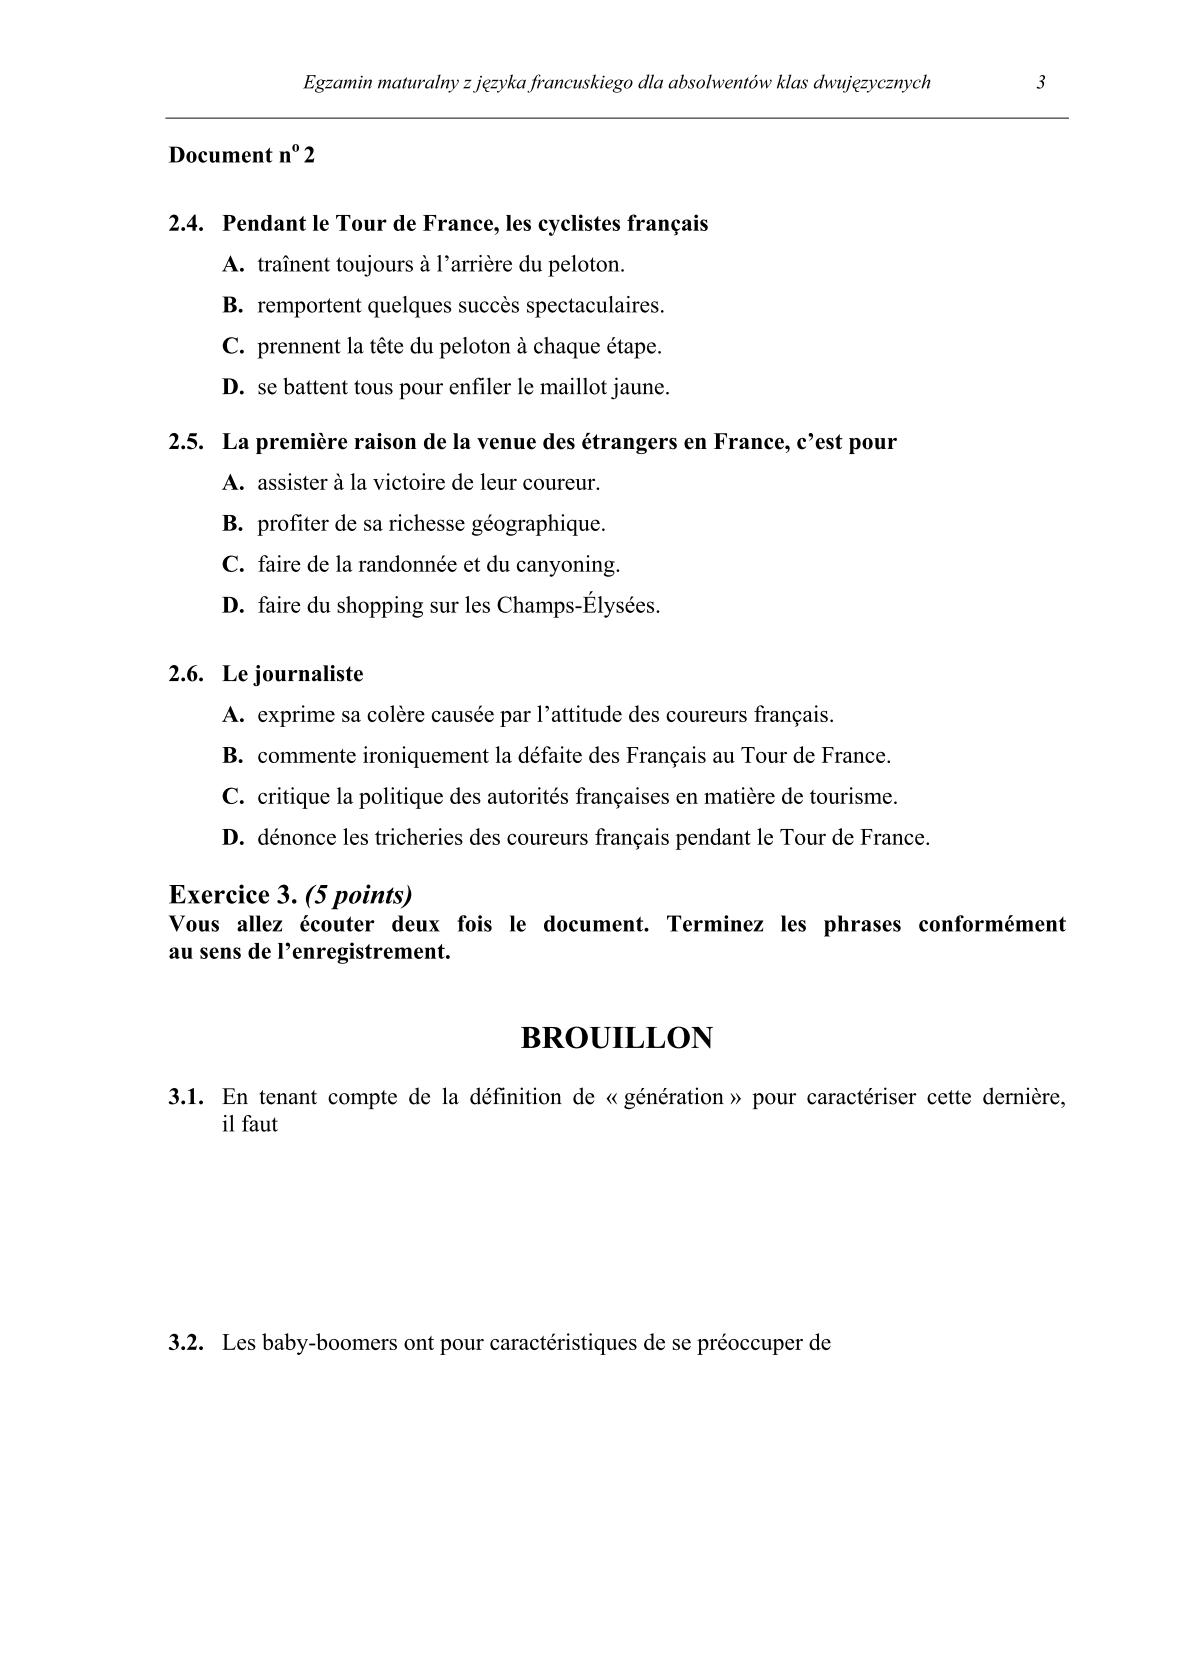 pytania-jezyk-francuski-dla-absolwentow-klas-dwujezycznych-matura-2014-str.3